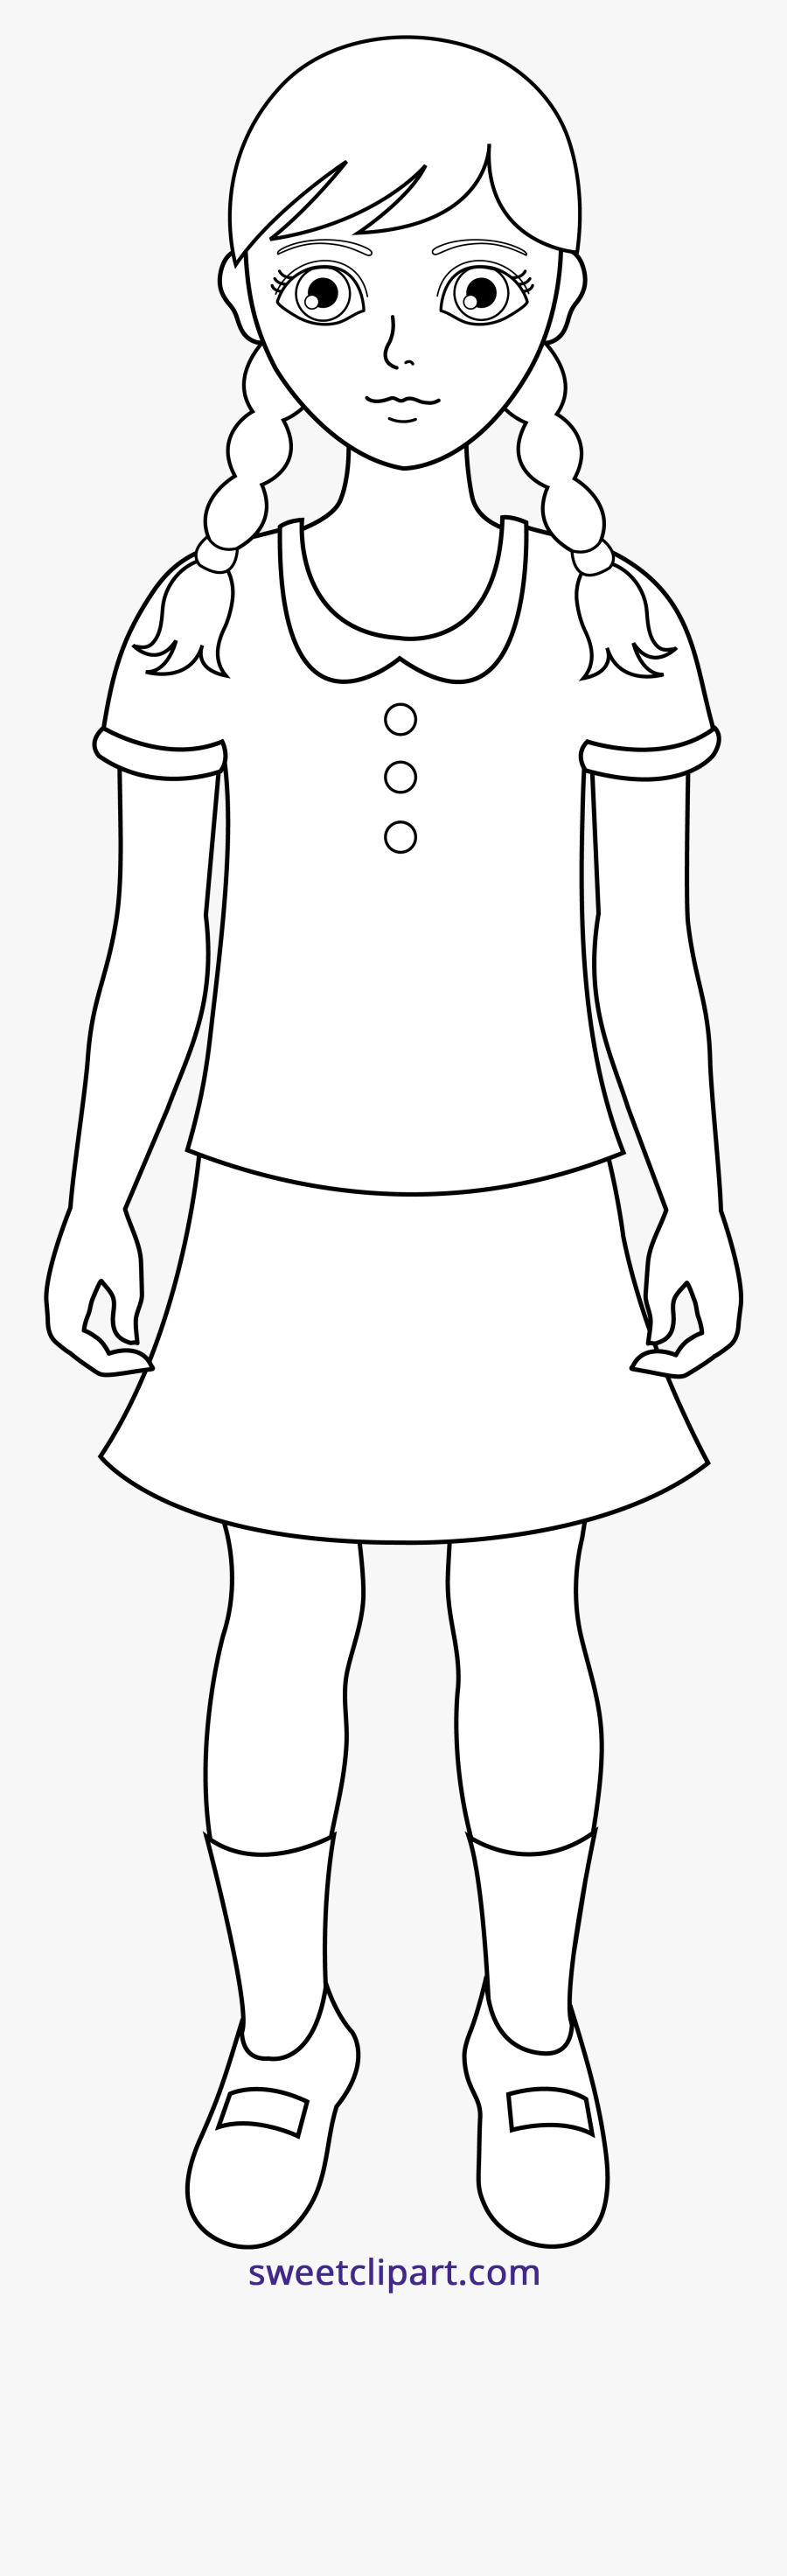 Transparent Little Girl Dress Clipart - School Girl Black And White Clipart, Transparent Clipart